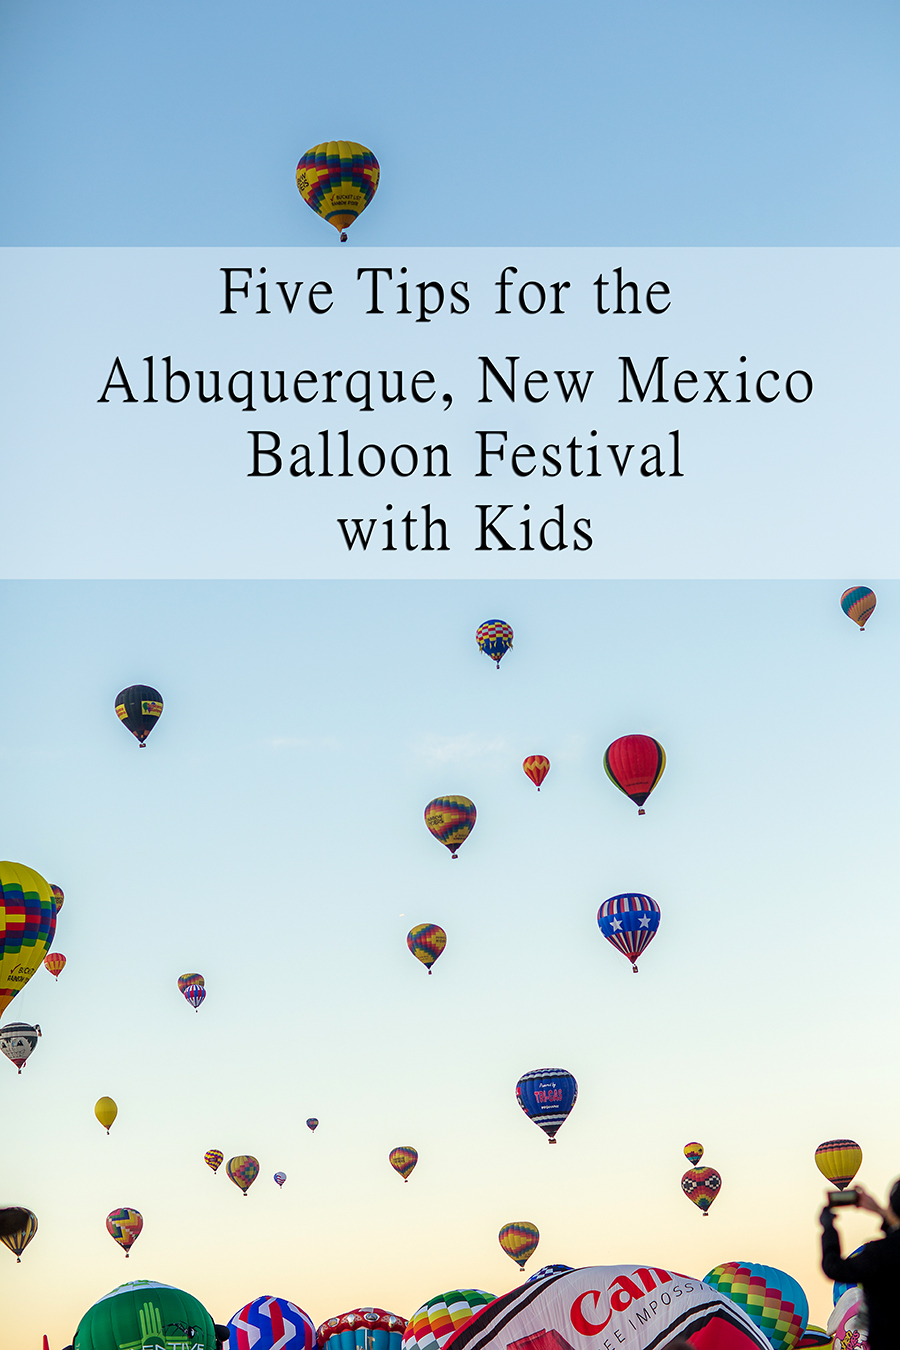 Hot Air Balloon Festival Albuquerque New Mexico with Kids